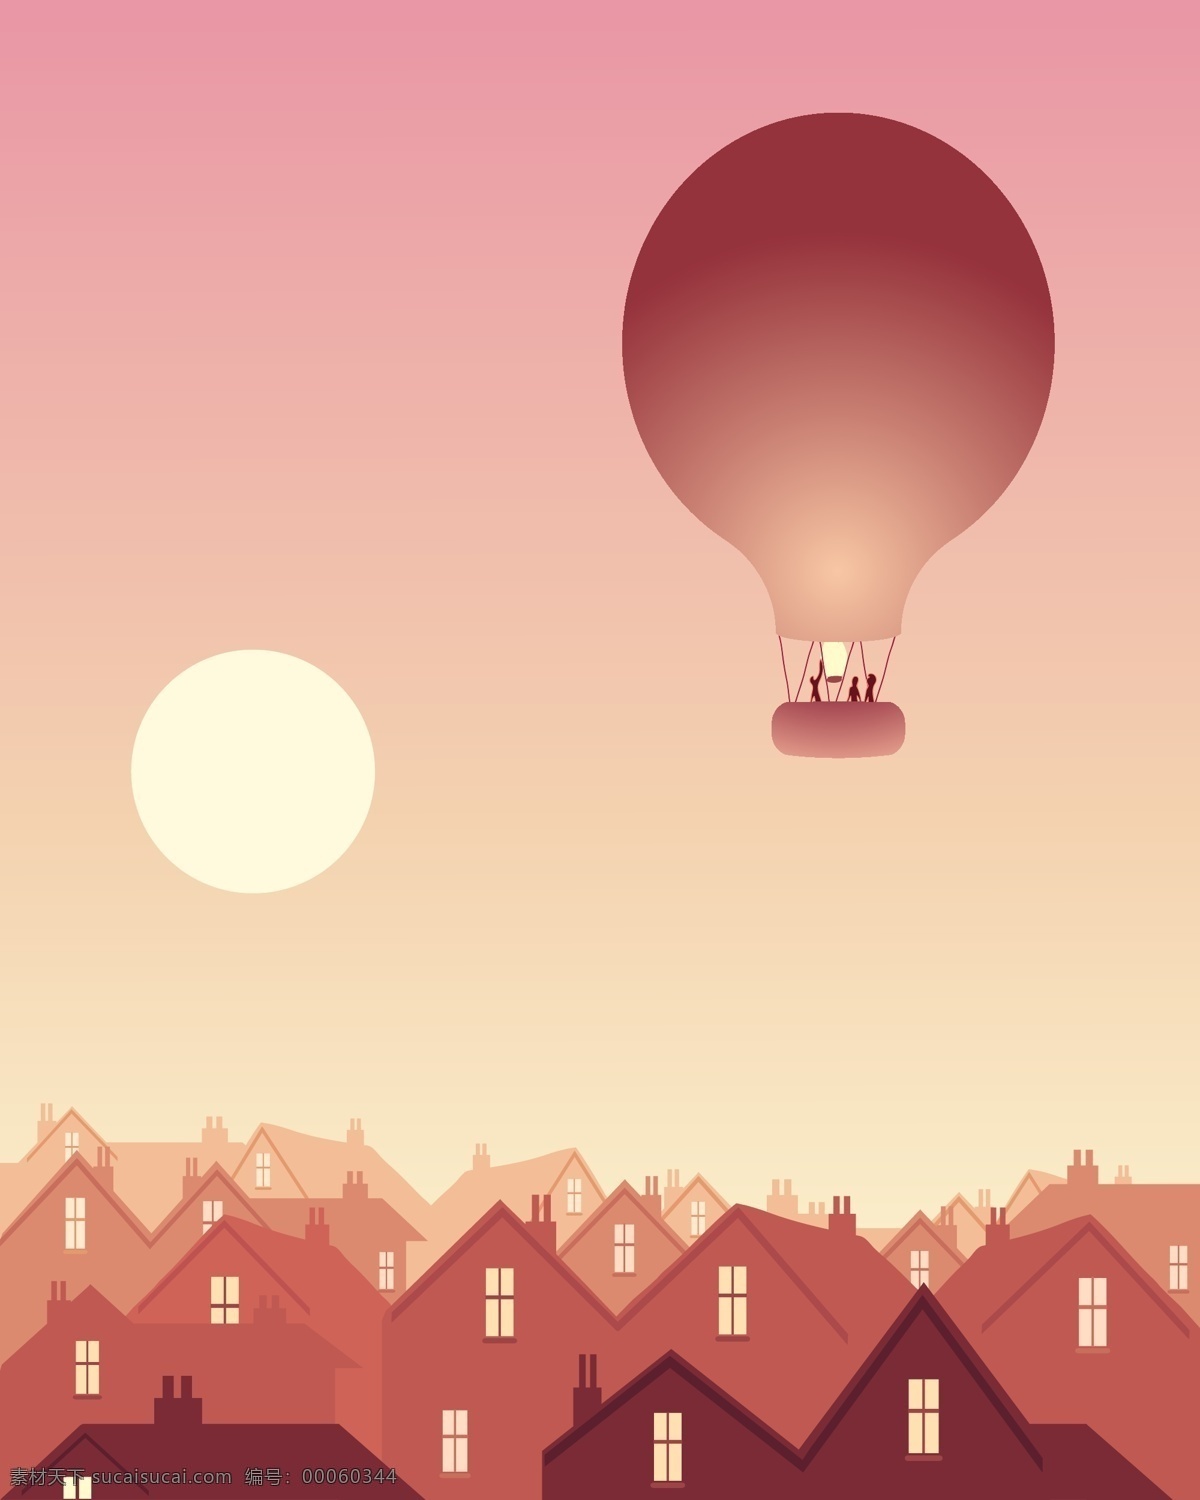 矢量 傍晚 城市 风景 房子 红色 落日 热气球 晚霞 矢量图 其他矢量图